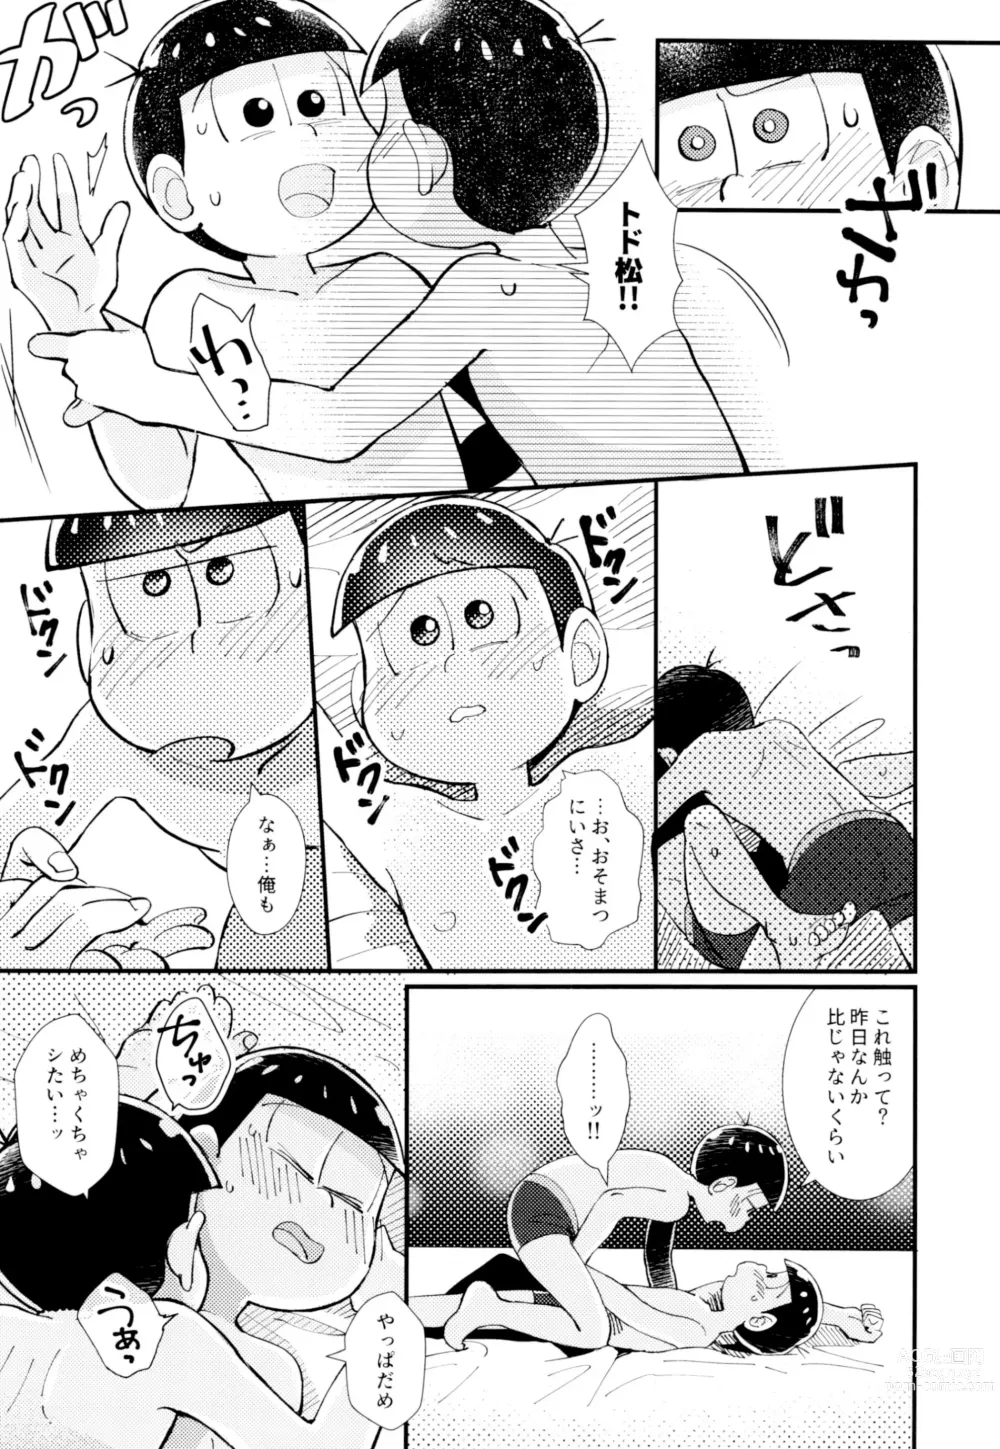 Page 43 of doujinshi Hajimari wa, Yomichi no Kaori.